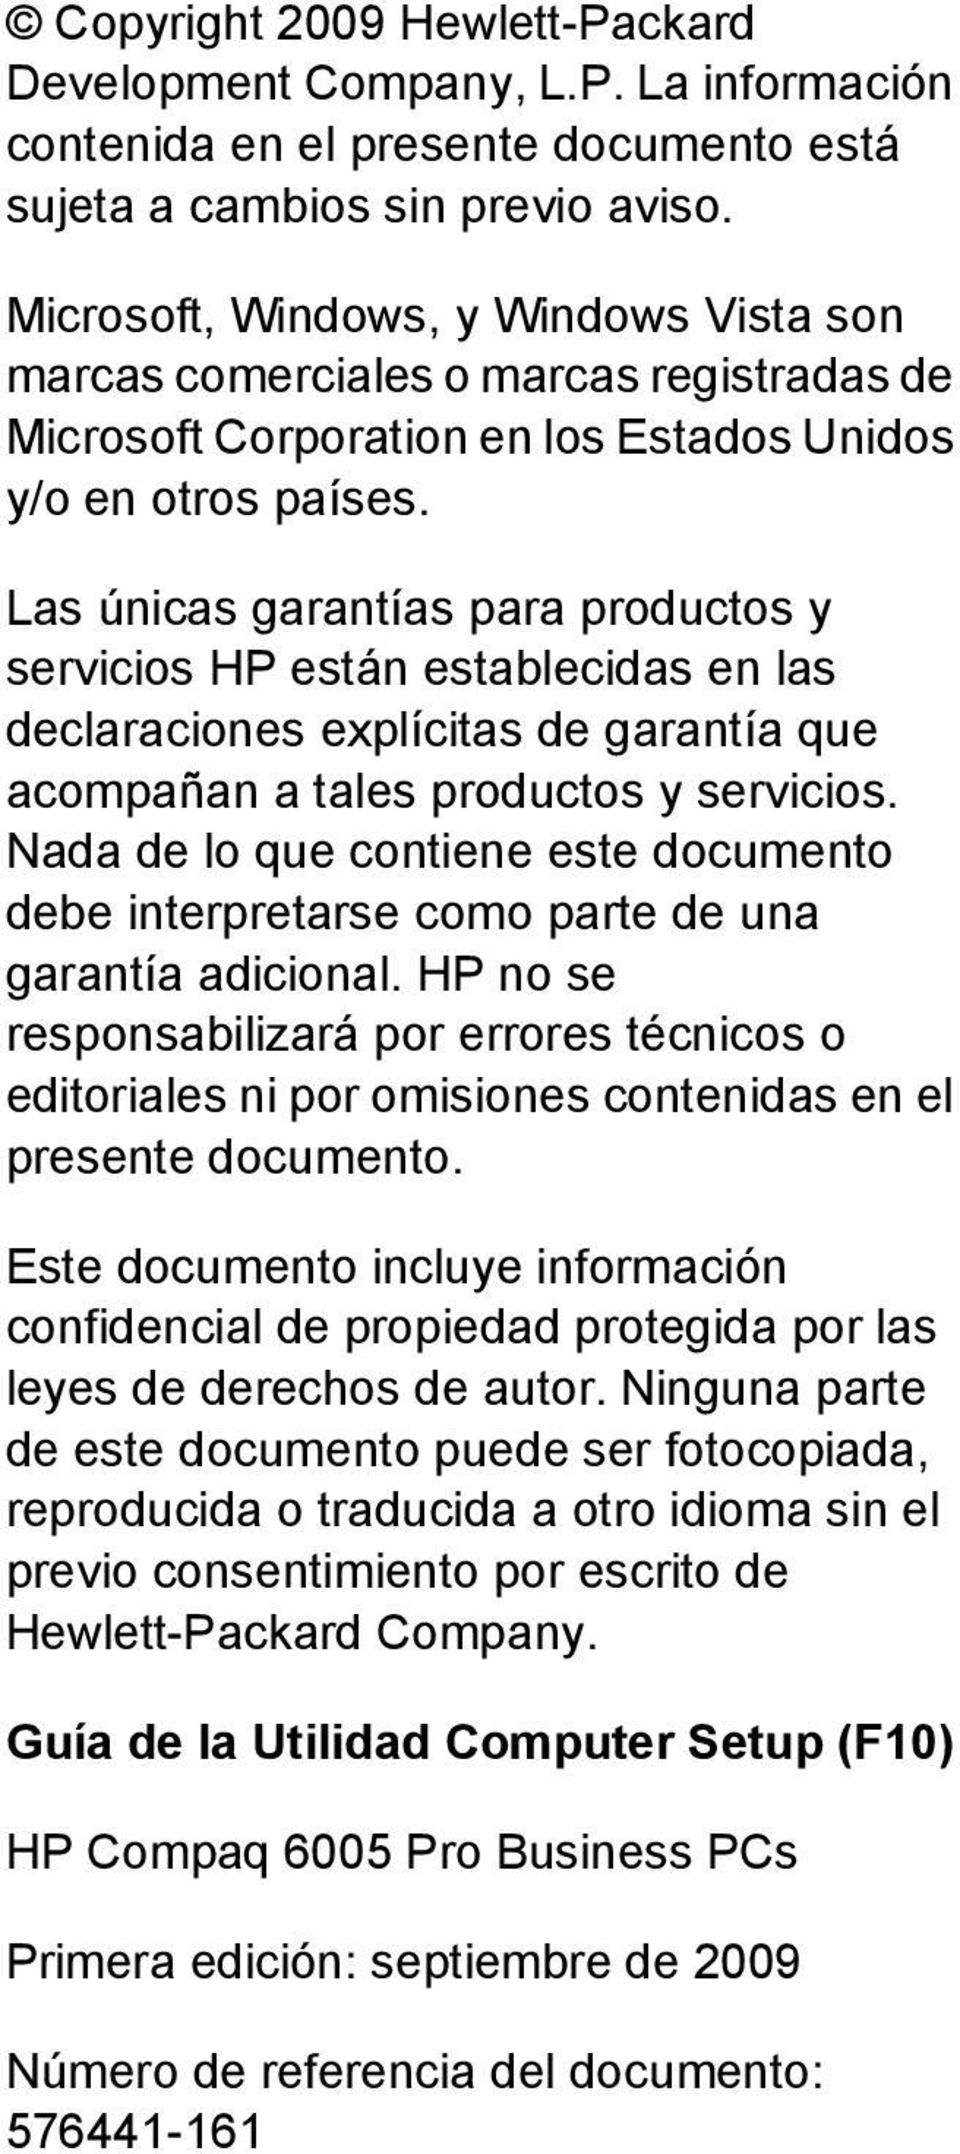 Las únicas garantías para productos y servicios HP están establecidas en las declaraciones explícitas de garantía que acompañan a tales productos y servicios.